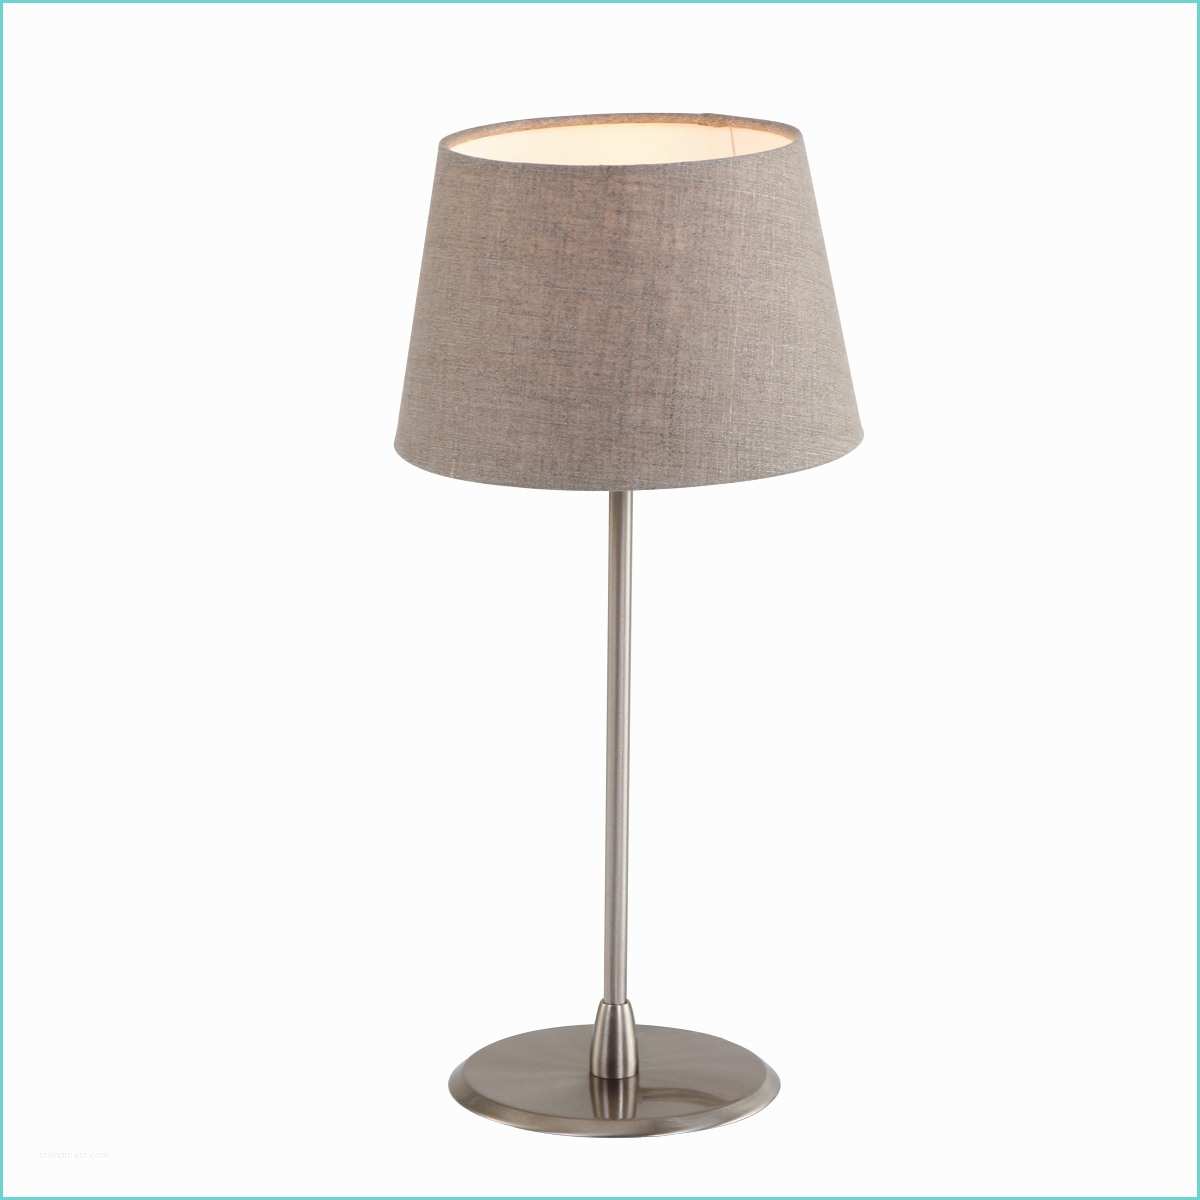 Lampe De Chevet A Pile R Sultat Sup Rieur 60 Beau Lampe Pile Ikea Galerie 2017